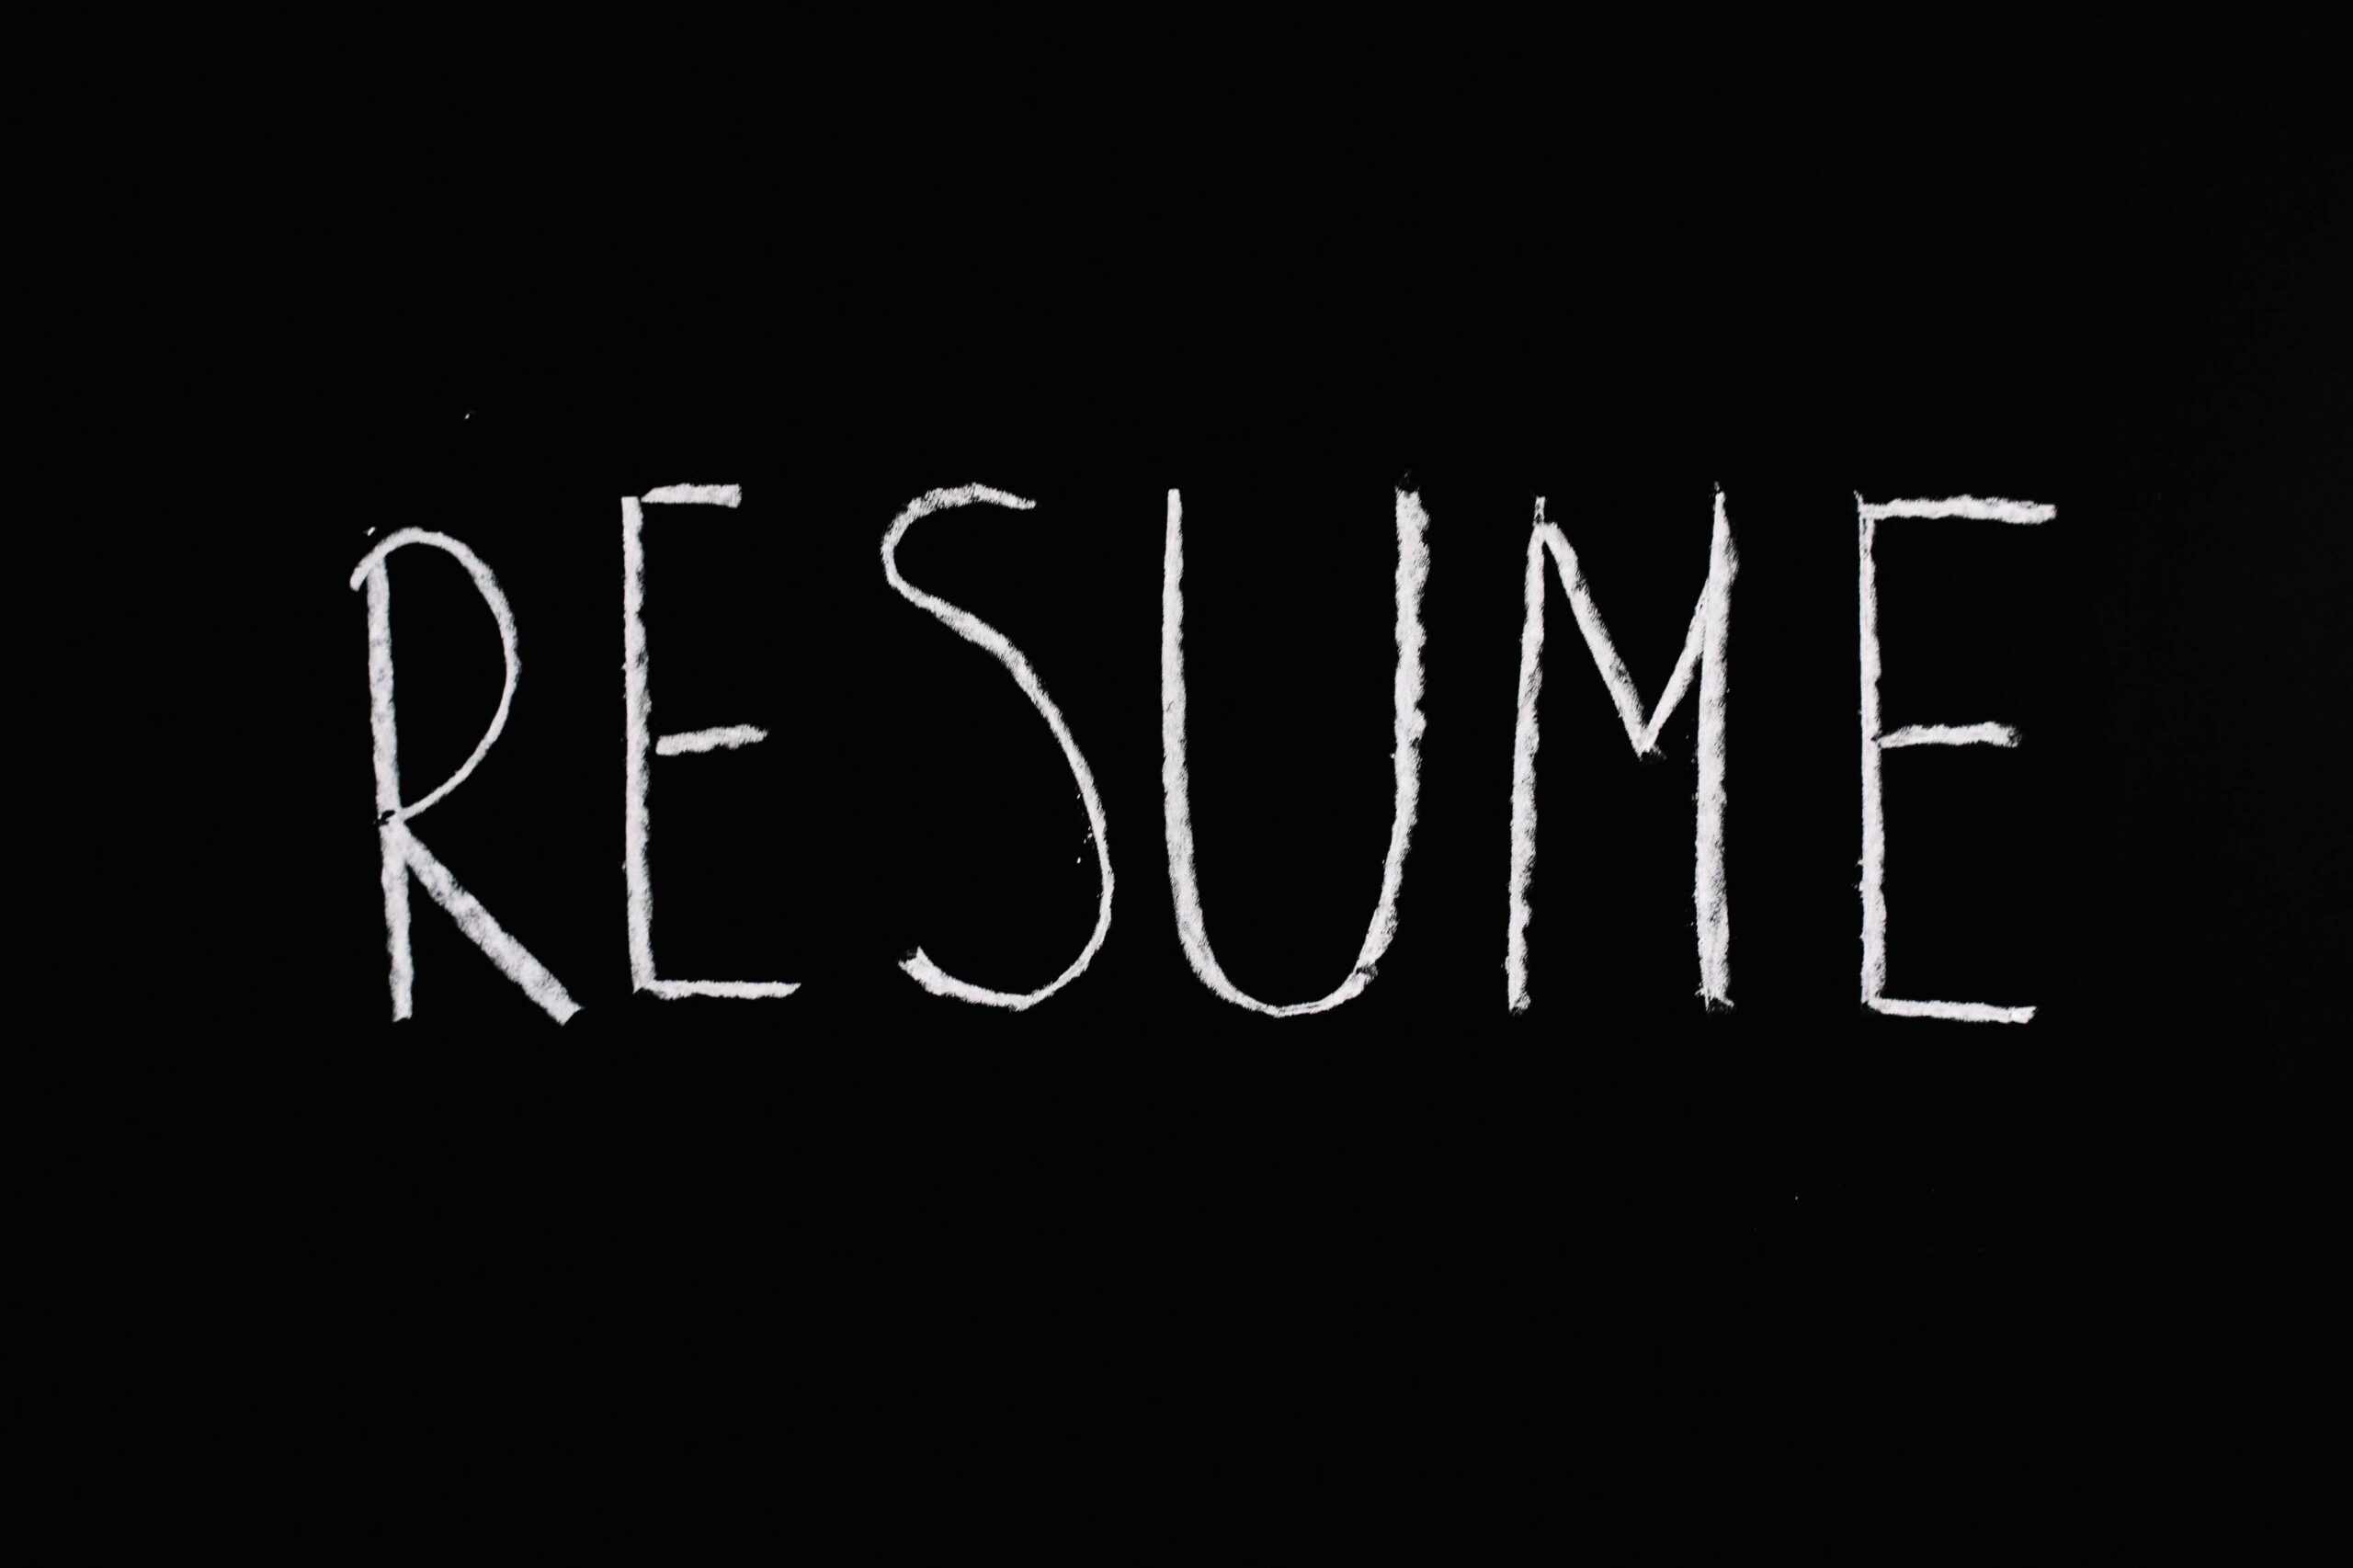 Resume written on blackboard